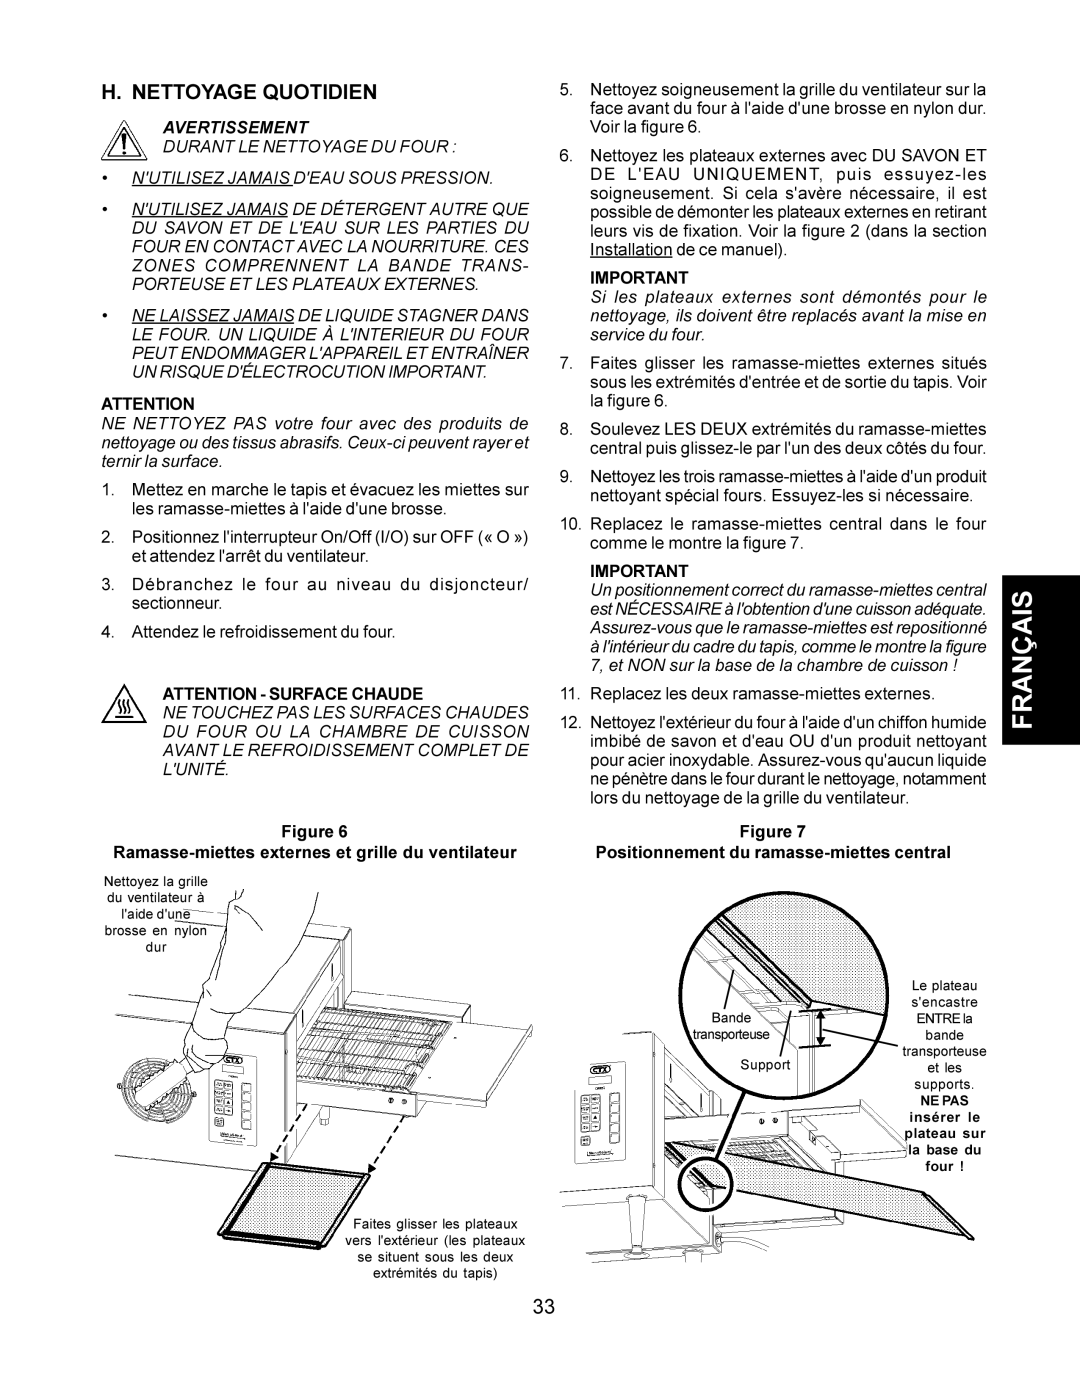 CTX TCO21140077, TCO21140063, TCO21140035 manual Nettoyage Quotidien, Ramasse-miettes externes et grille du ventilateur 